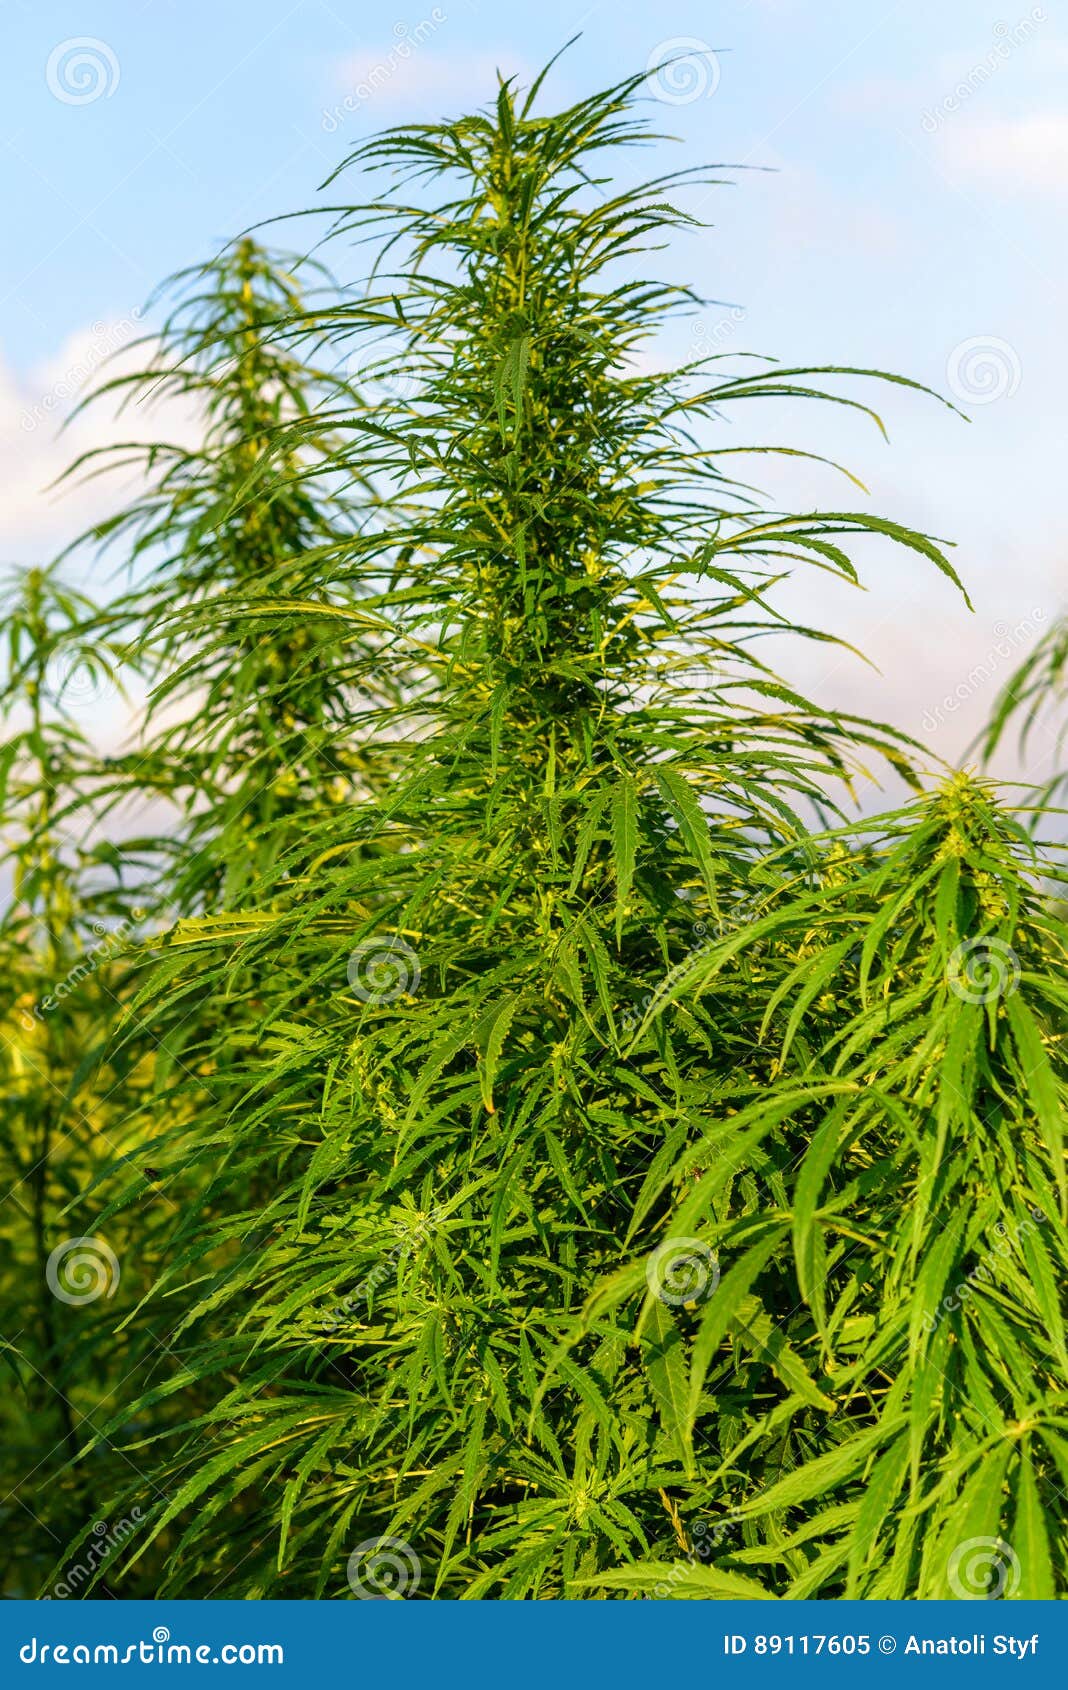 Фото роста марихуаны теряю сознание от конопли